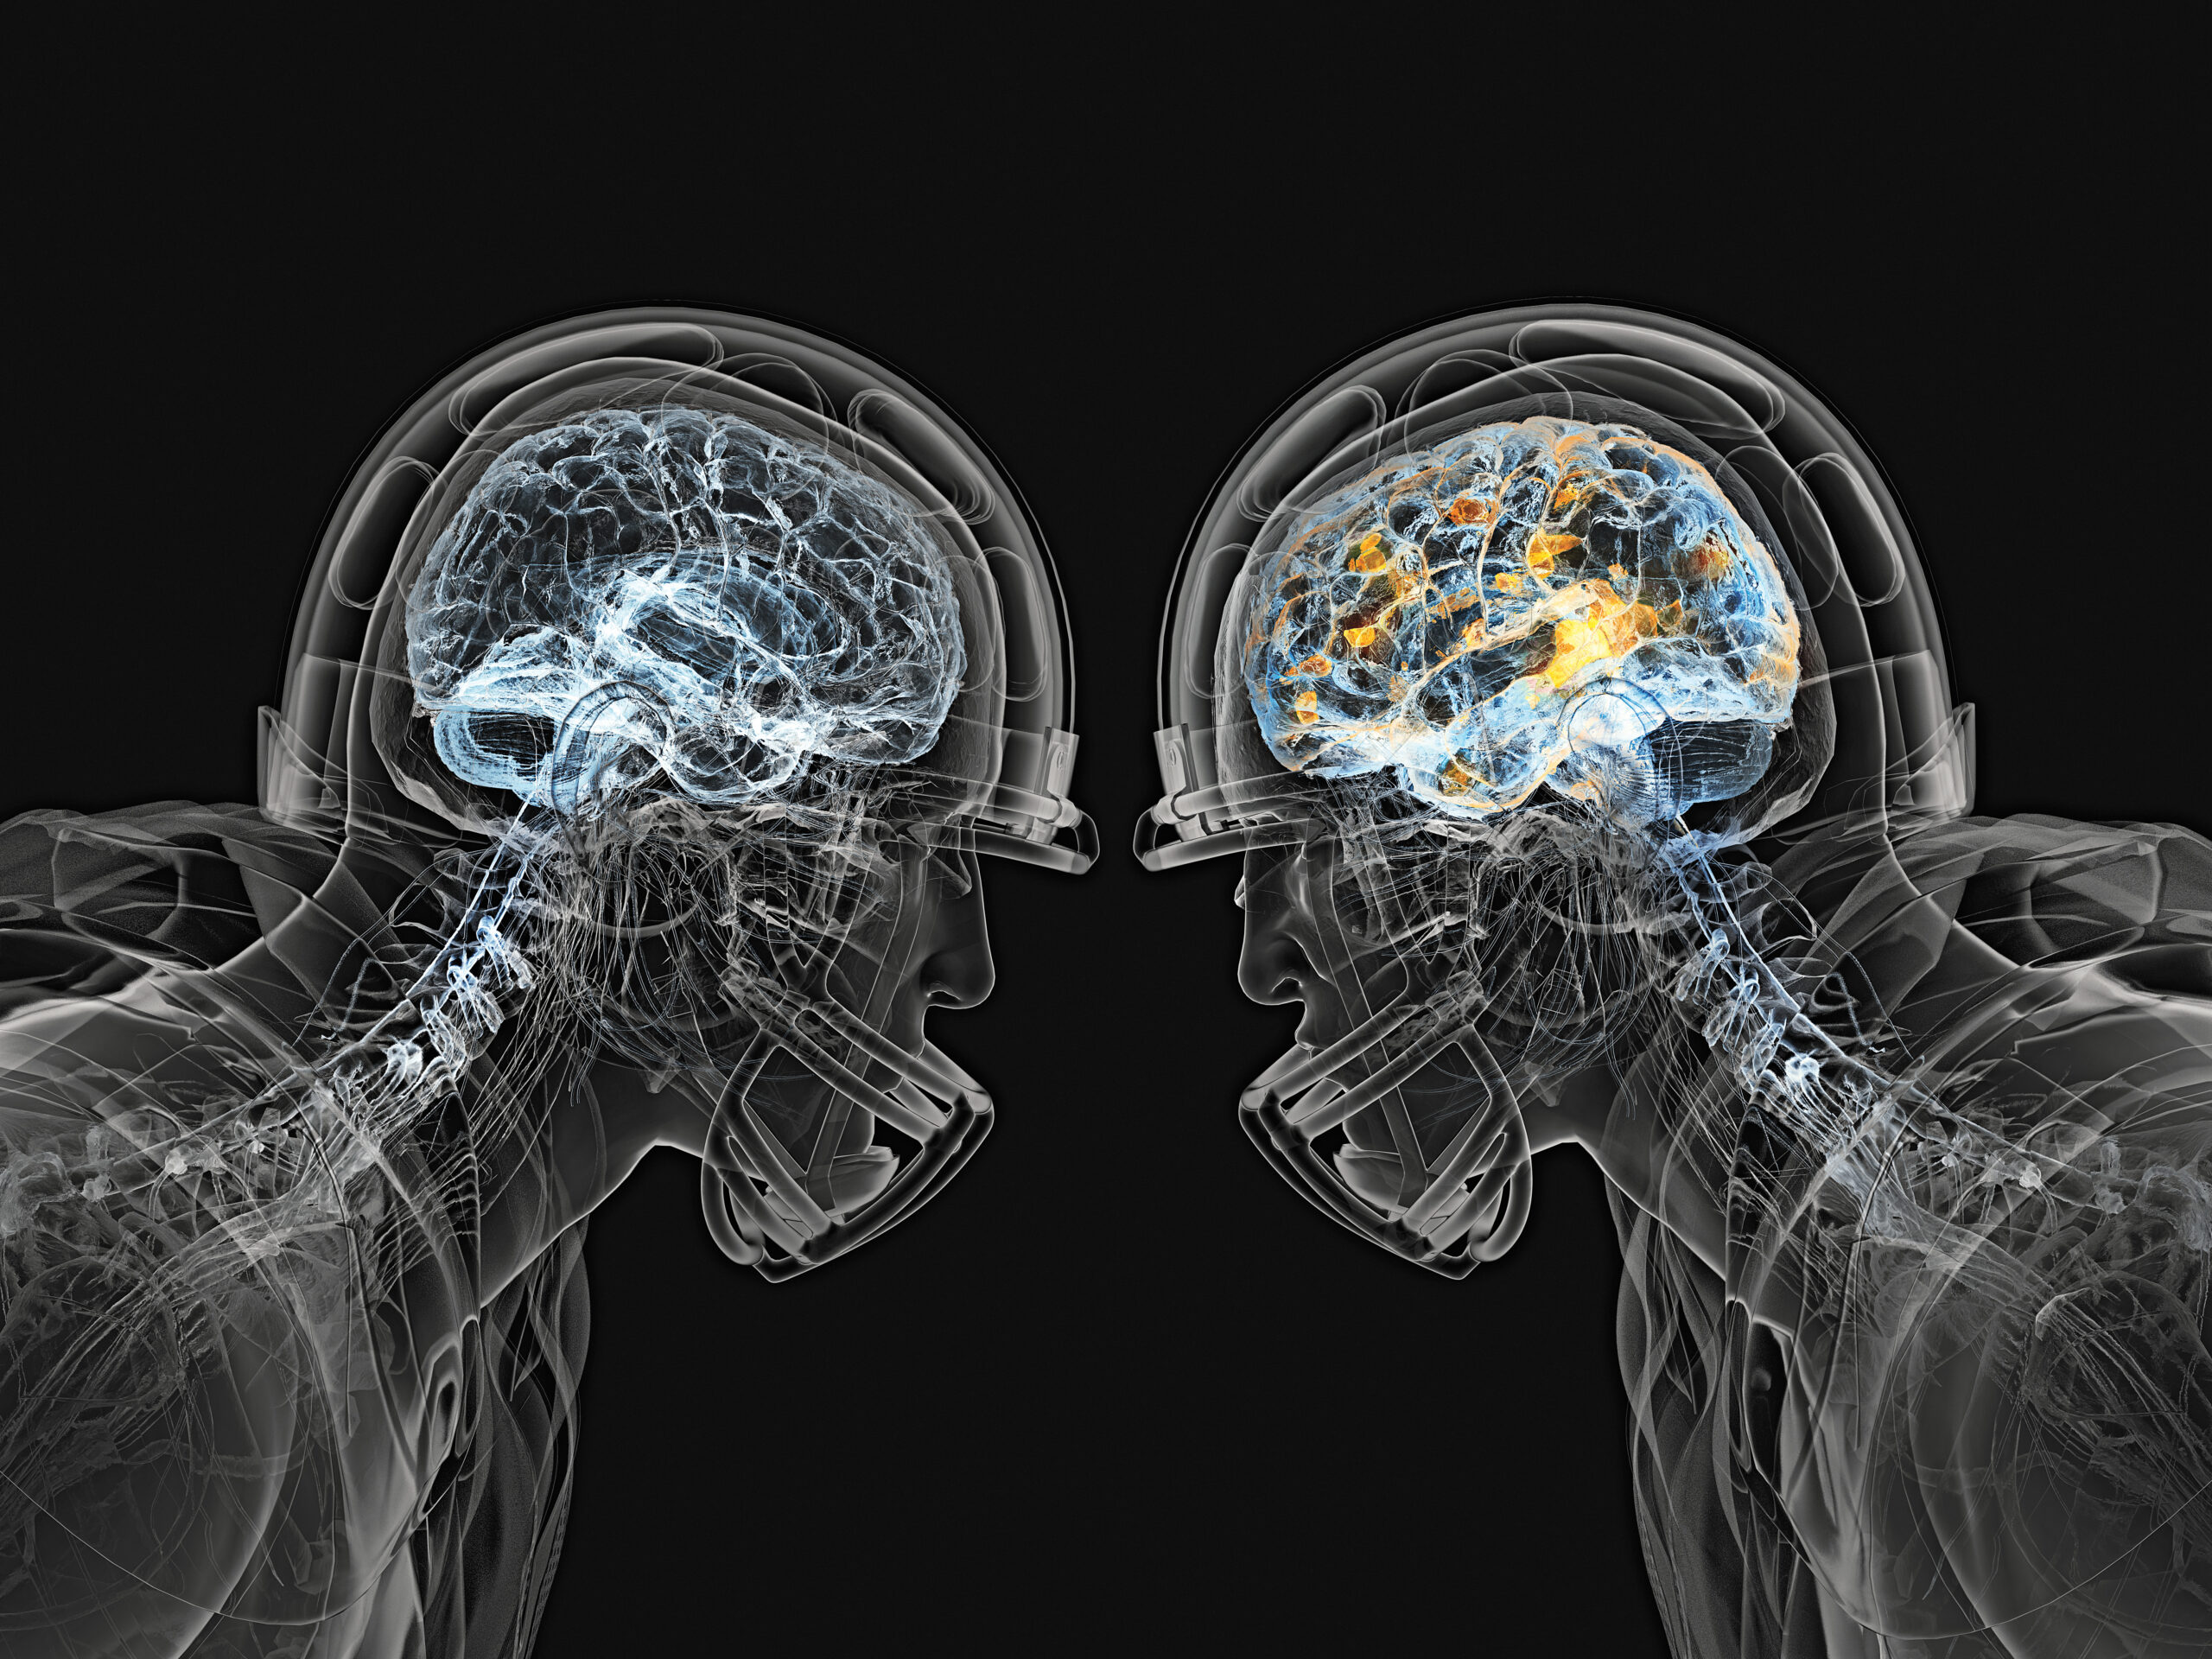 Tackling Brain Trauma Head-On